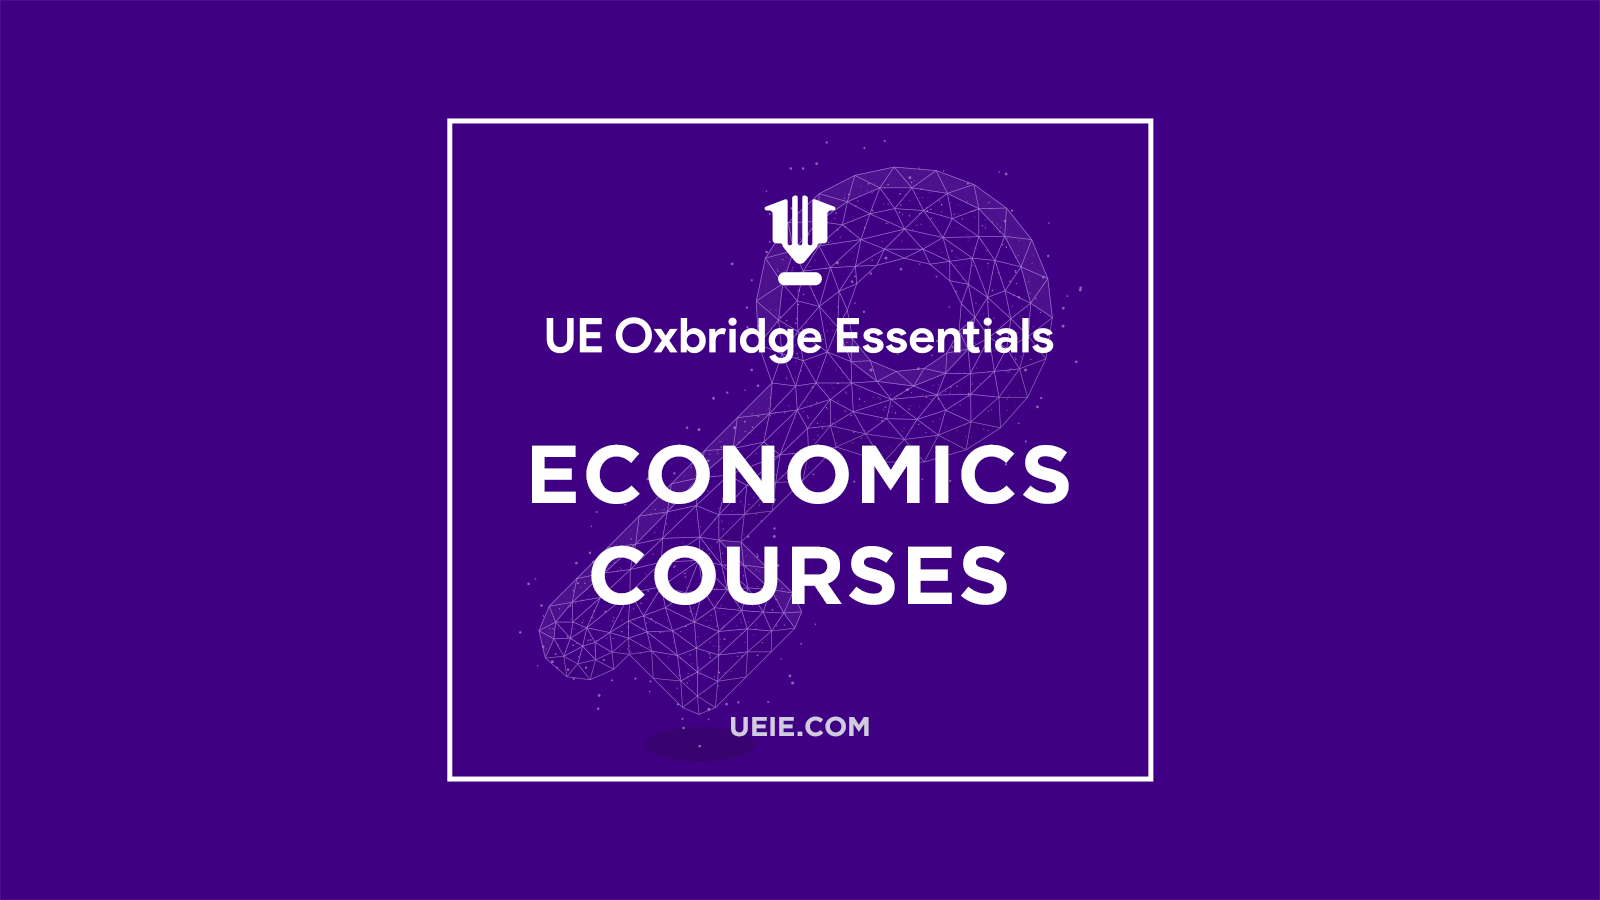 Oxbridge Economics Courses